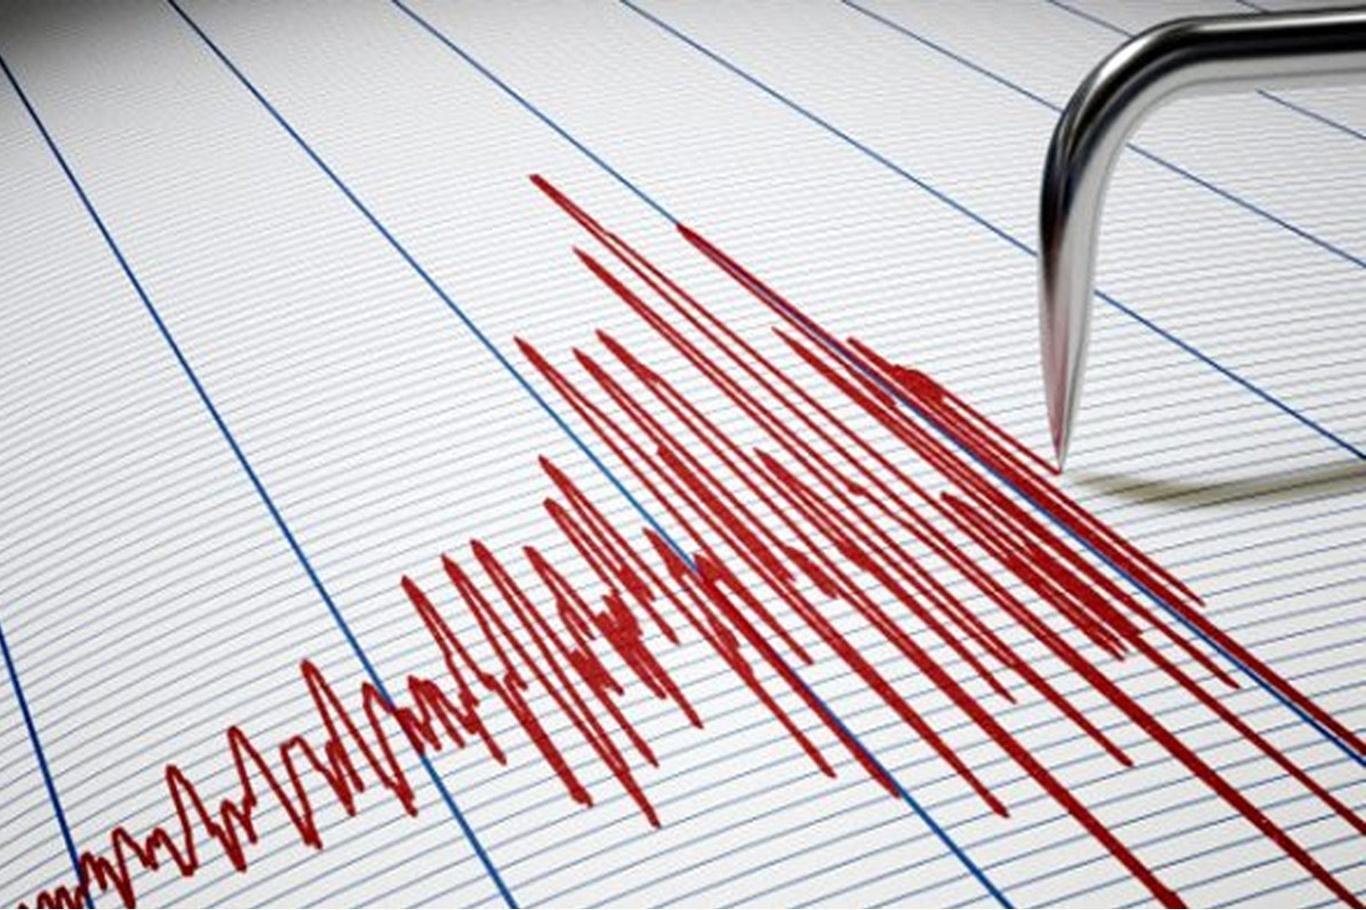 Malatya'da 4,8 büyüklüğünde bir deprem daha yaşandı